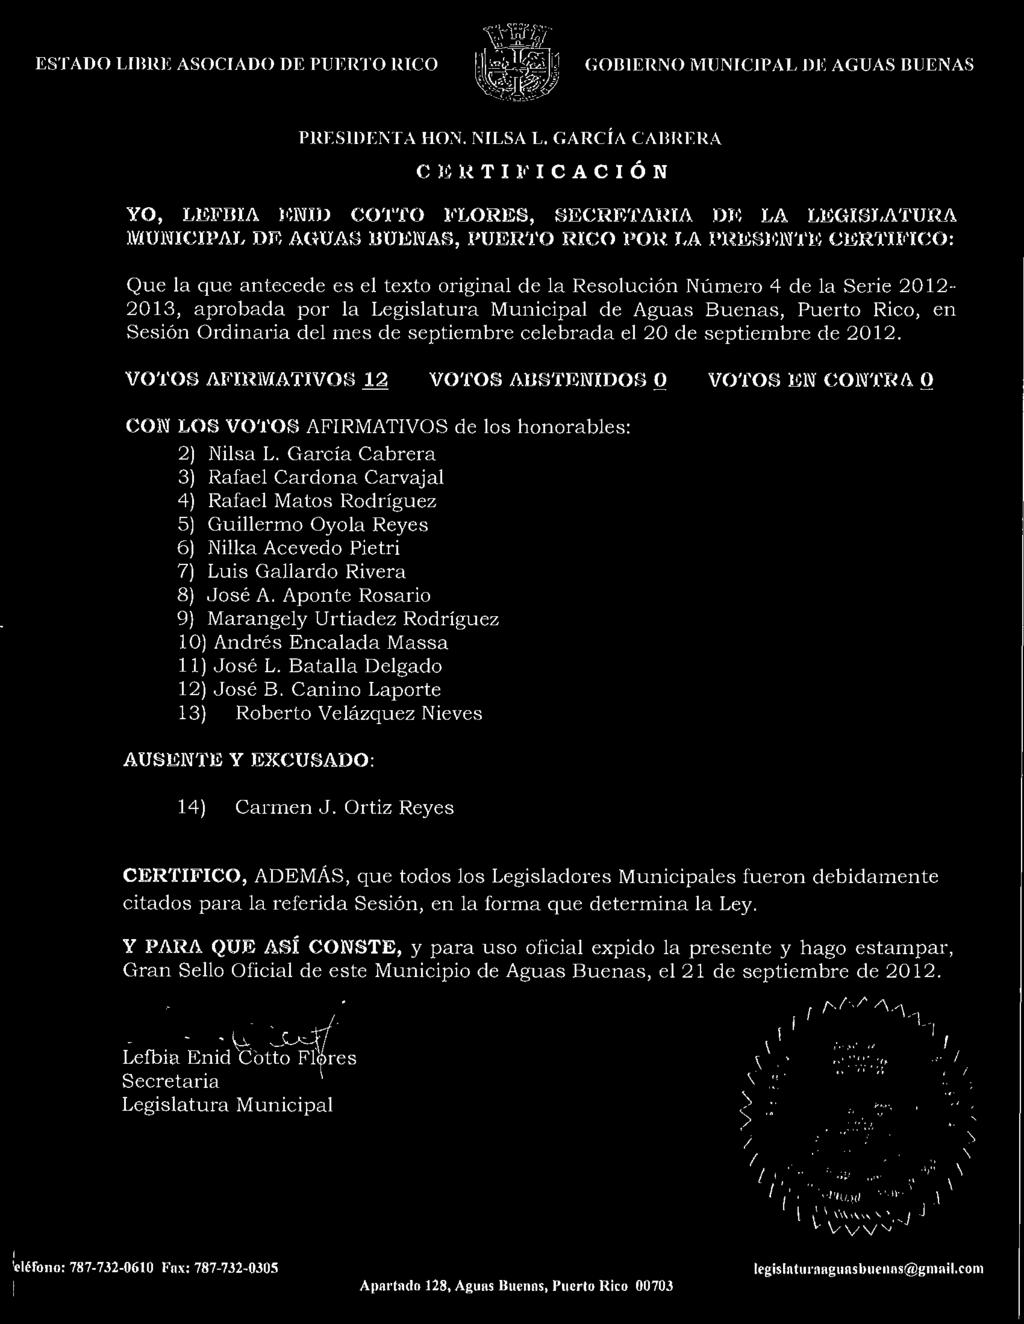 la Resoluci6n Numero 4 de la Serie 2012-2013, aprobada par la Legislatura Municipal de Aguas Buenas, Puerto Rico, en Sesi6n Ordinaria del mes de septiembre celebrada el 20 de septiembre de 2012.